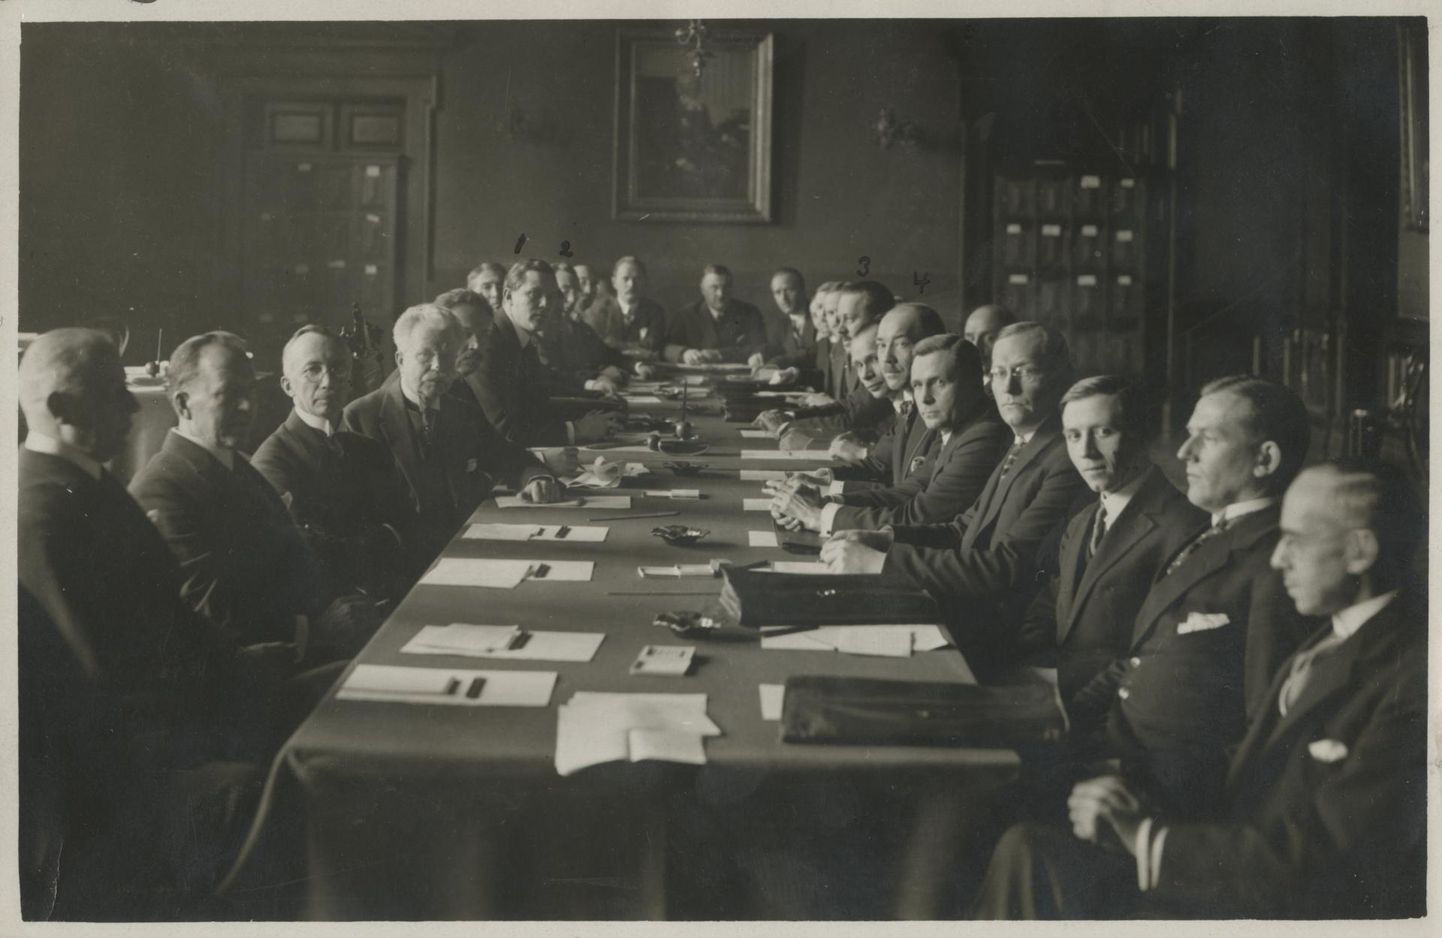 1924. aastal Helsingis toimunud Balti riikide konverents oli üks paljudest, kus kõneldi ka majanduse teemadel, kuid mis otsustavaid arenguid kaasa ei toonud. Eestit esindas sellel konverentsil välisminister Karl Robert Pusta (fotol markeeritud numbriga 4).